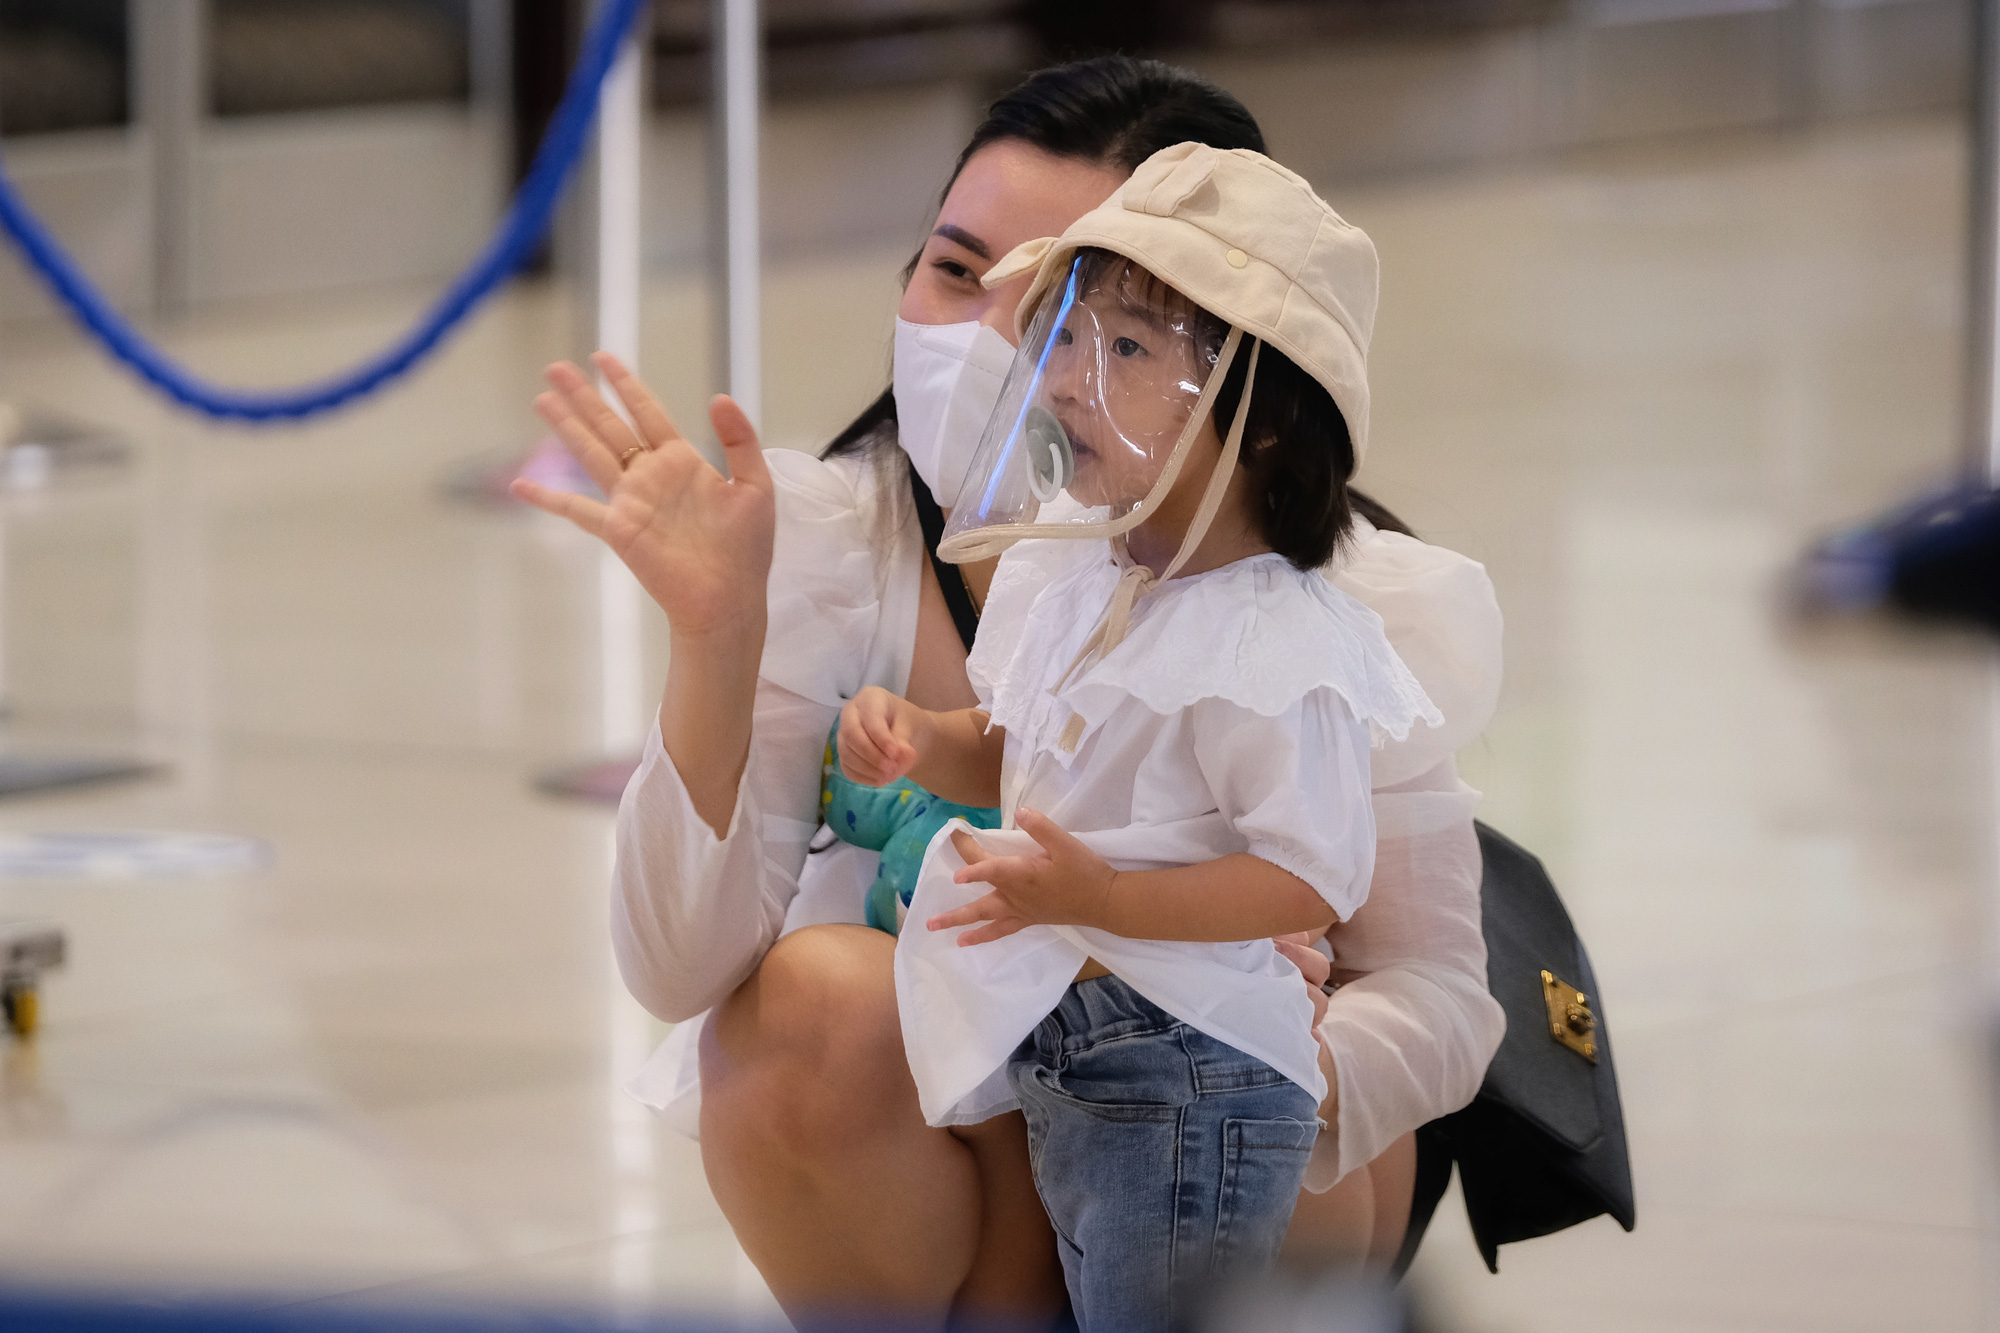 Sân bay Nội Bài dự kiến đón 80.000 khách/ngày dịp nghỉ lễ Quốc khánh, hành khách cần lưu ý những gì khi đi tàu bay? - Ảnh 4.